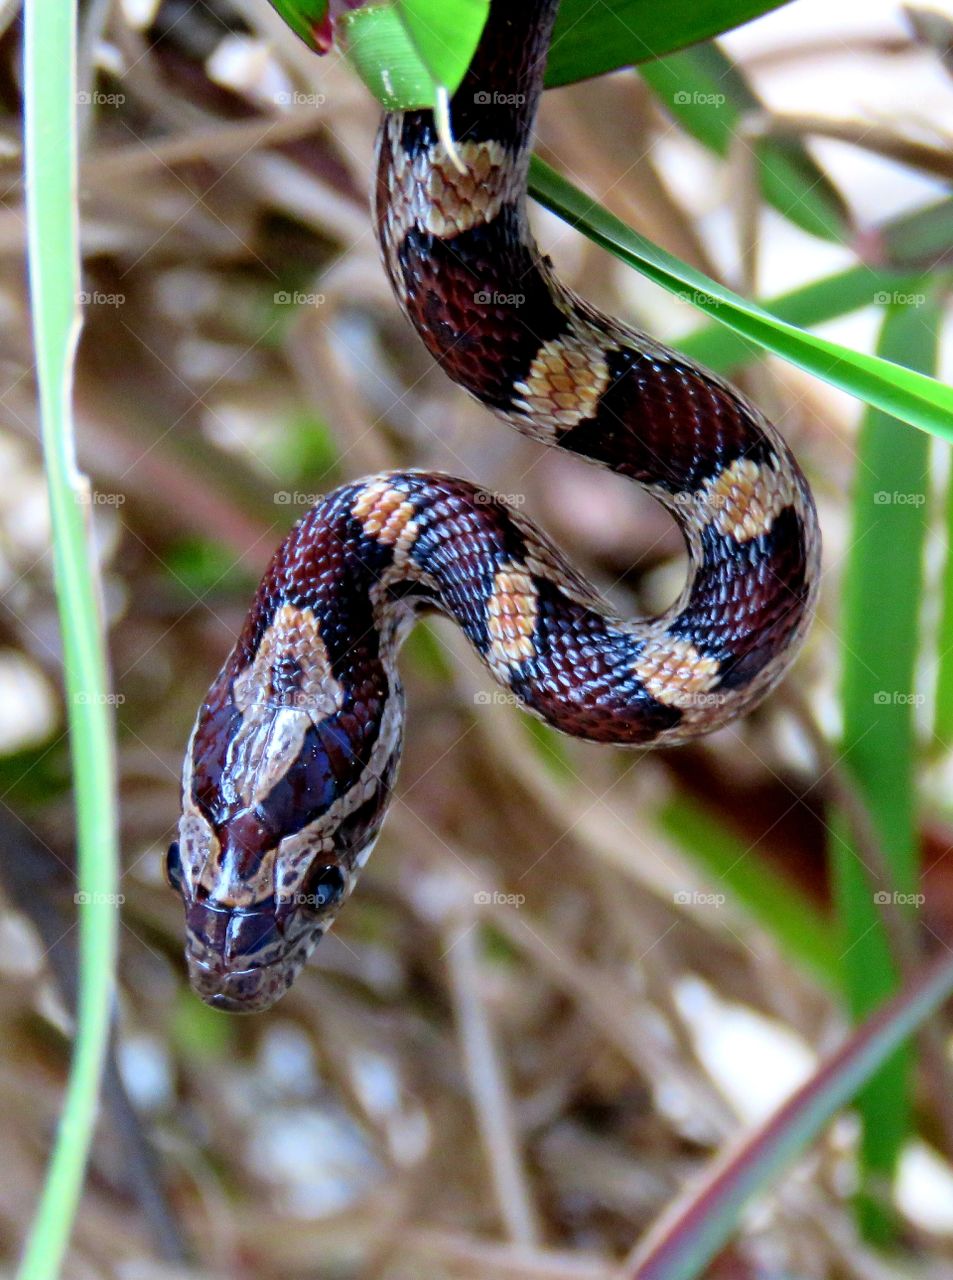 Juvenile corn snake, red rat snake